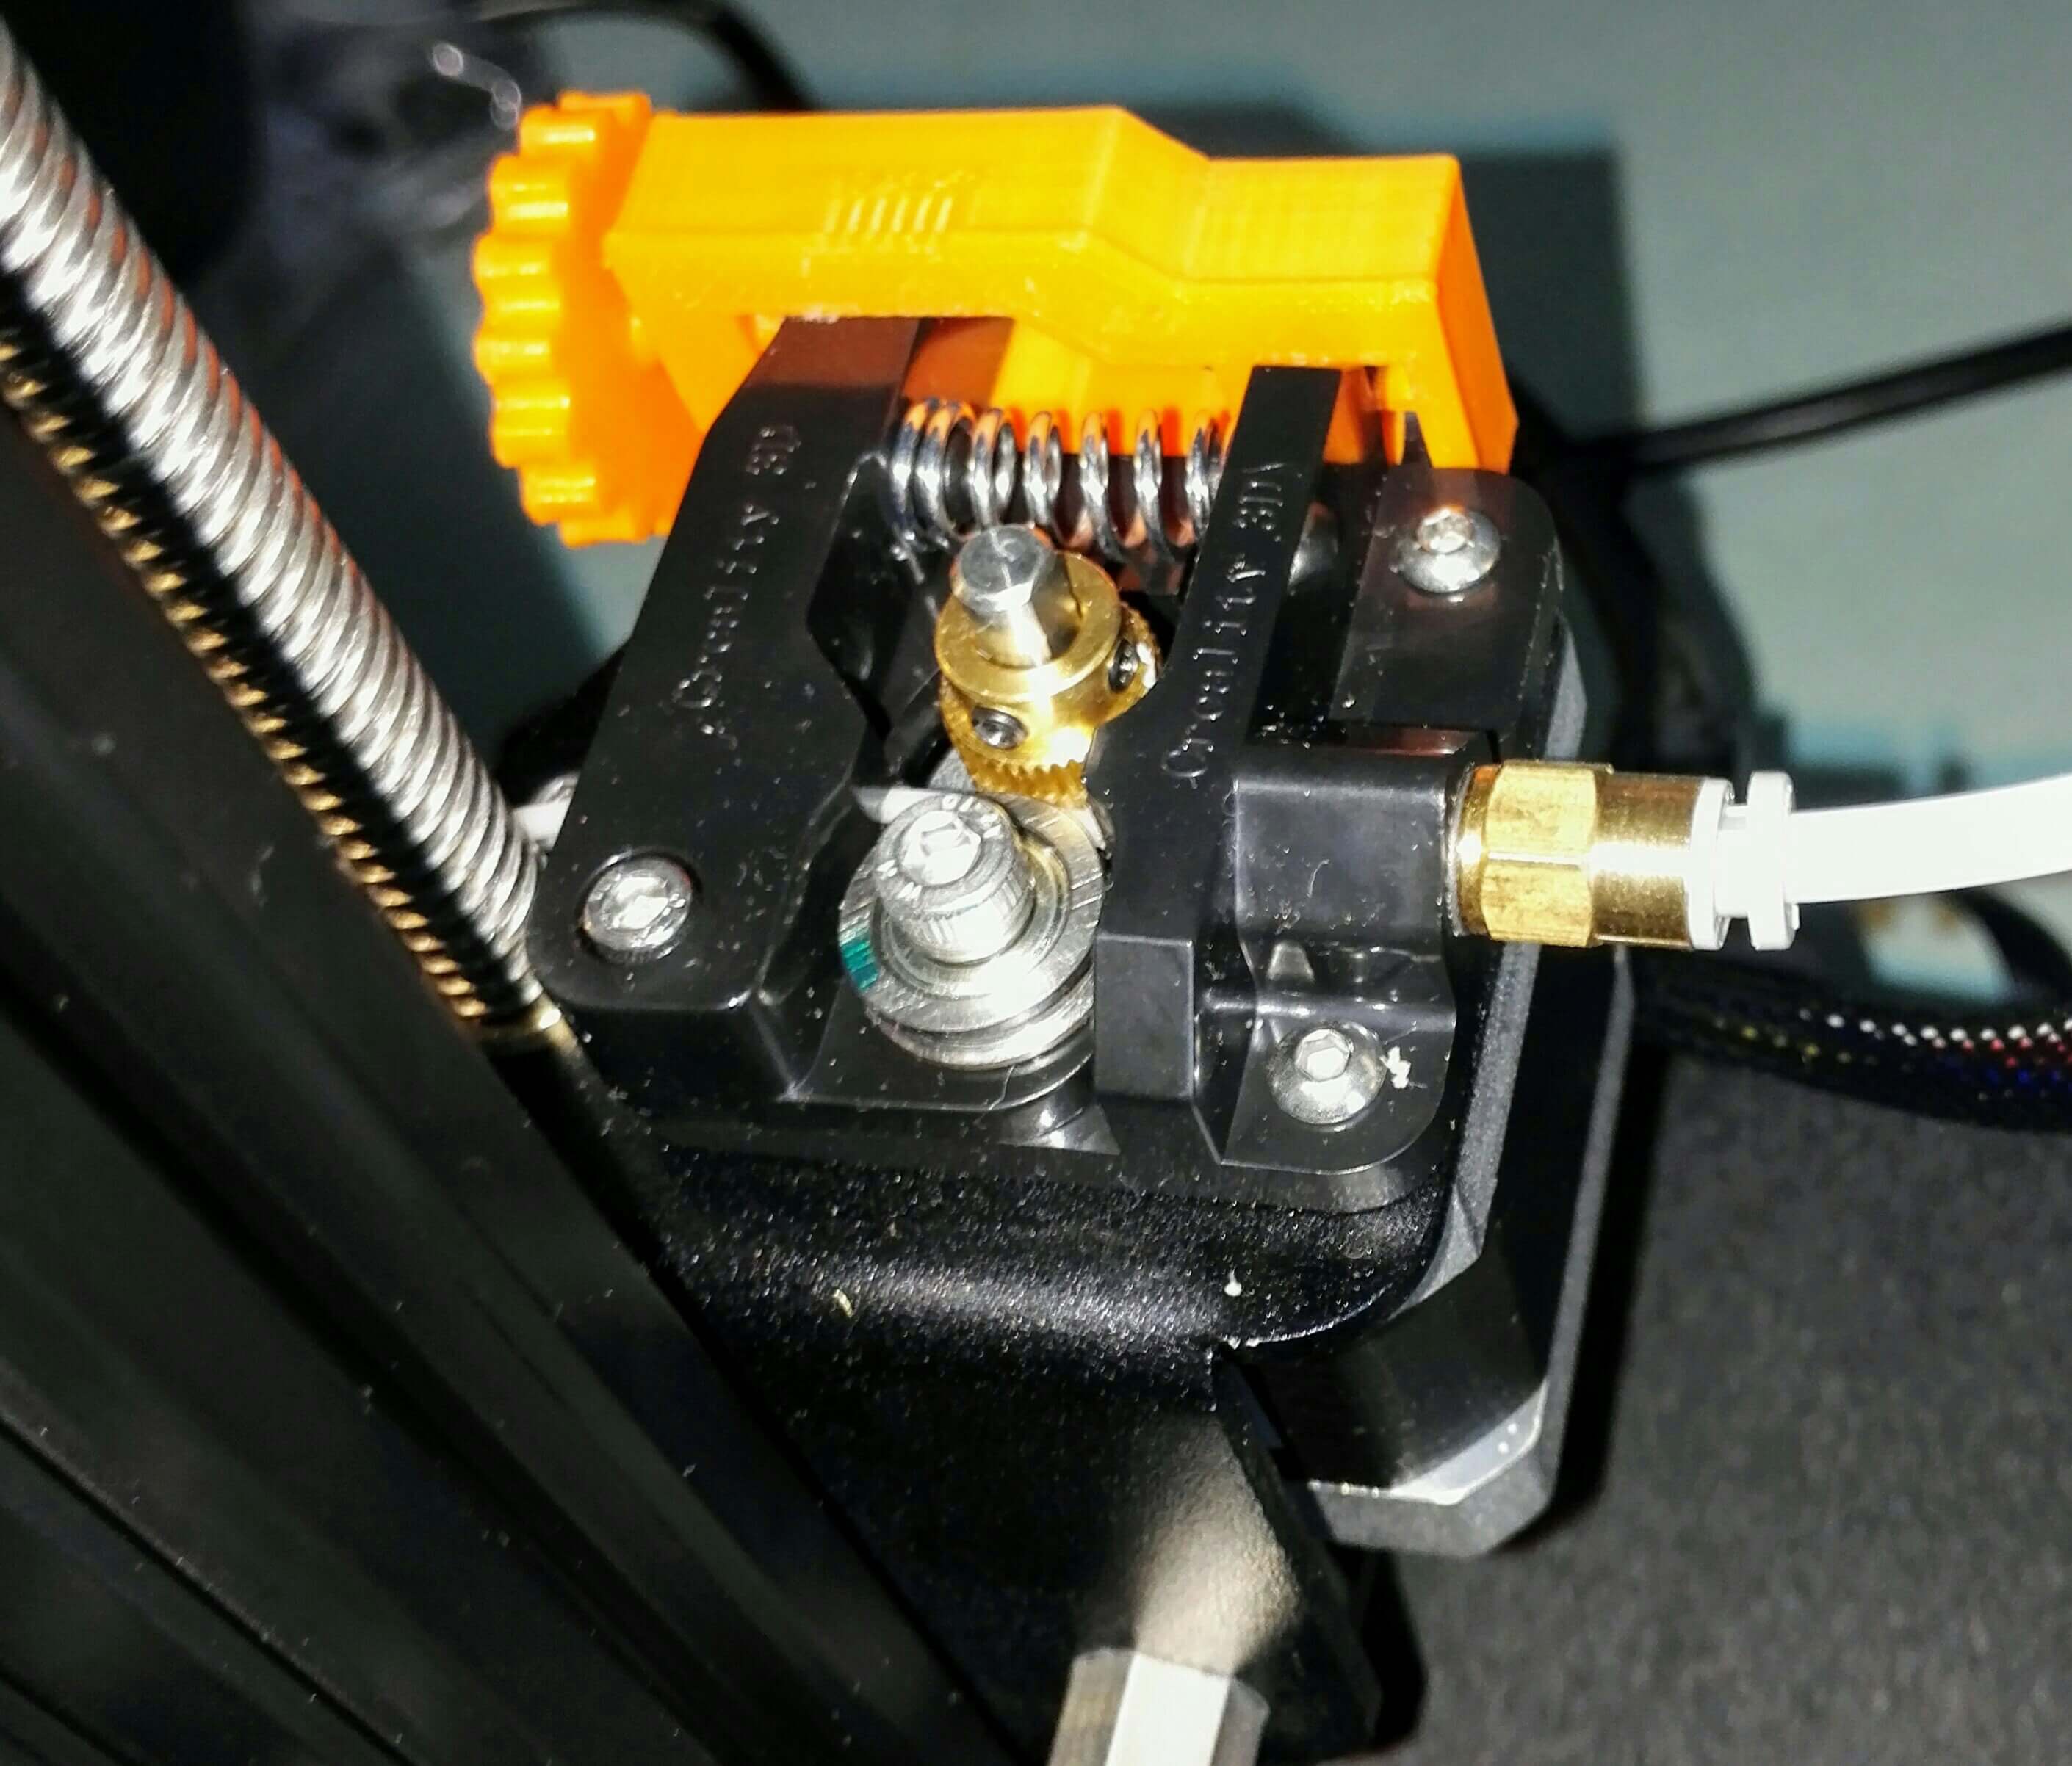 Problème avec la roue crantée de l'extrudeur d'une Ender 3 V2 - Entraide :  Questions/Réponses sur l'impression 3D - Forum pour les imprimantes 3D et  l'impression 3D